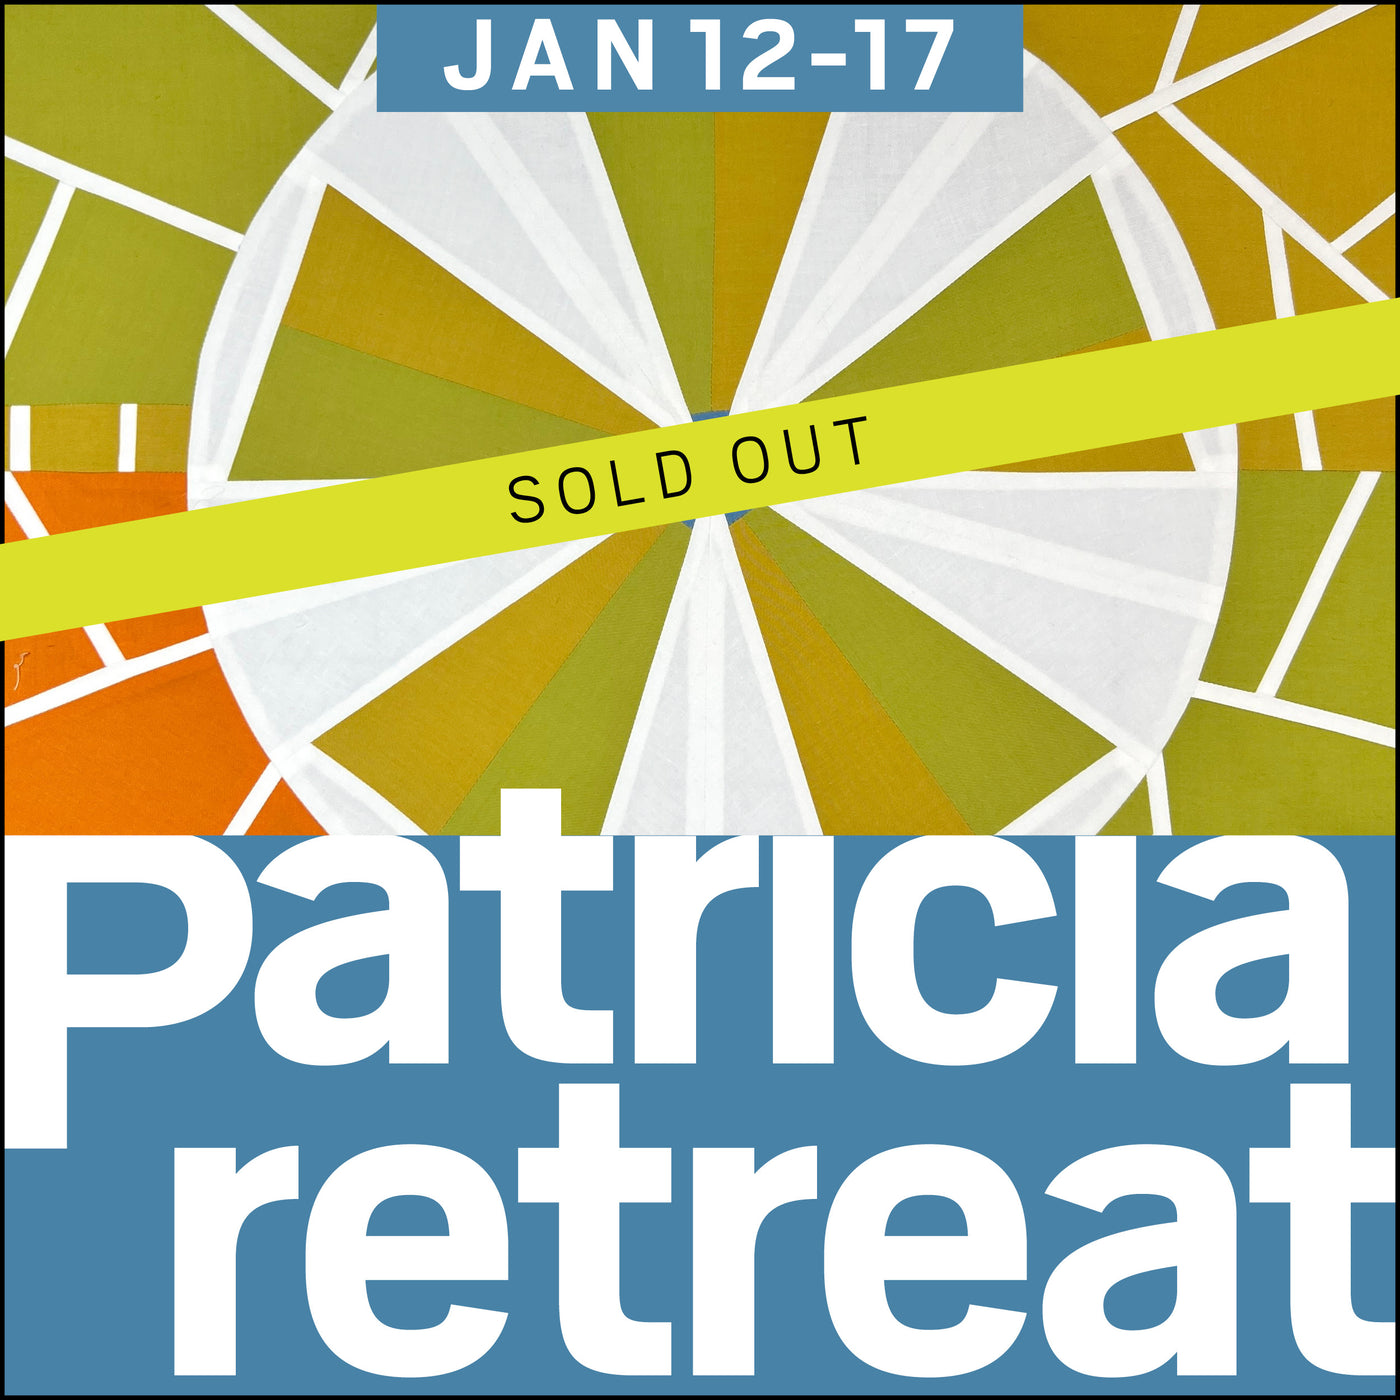 DEPOSIT: 2025 Patricia Retreat A | JAN 12-17